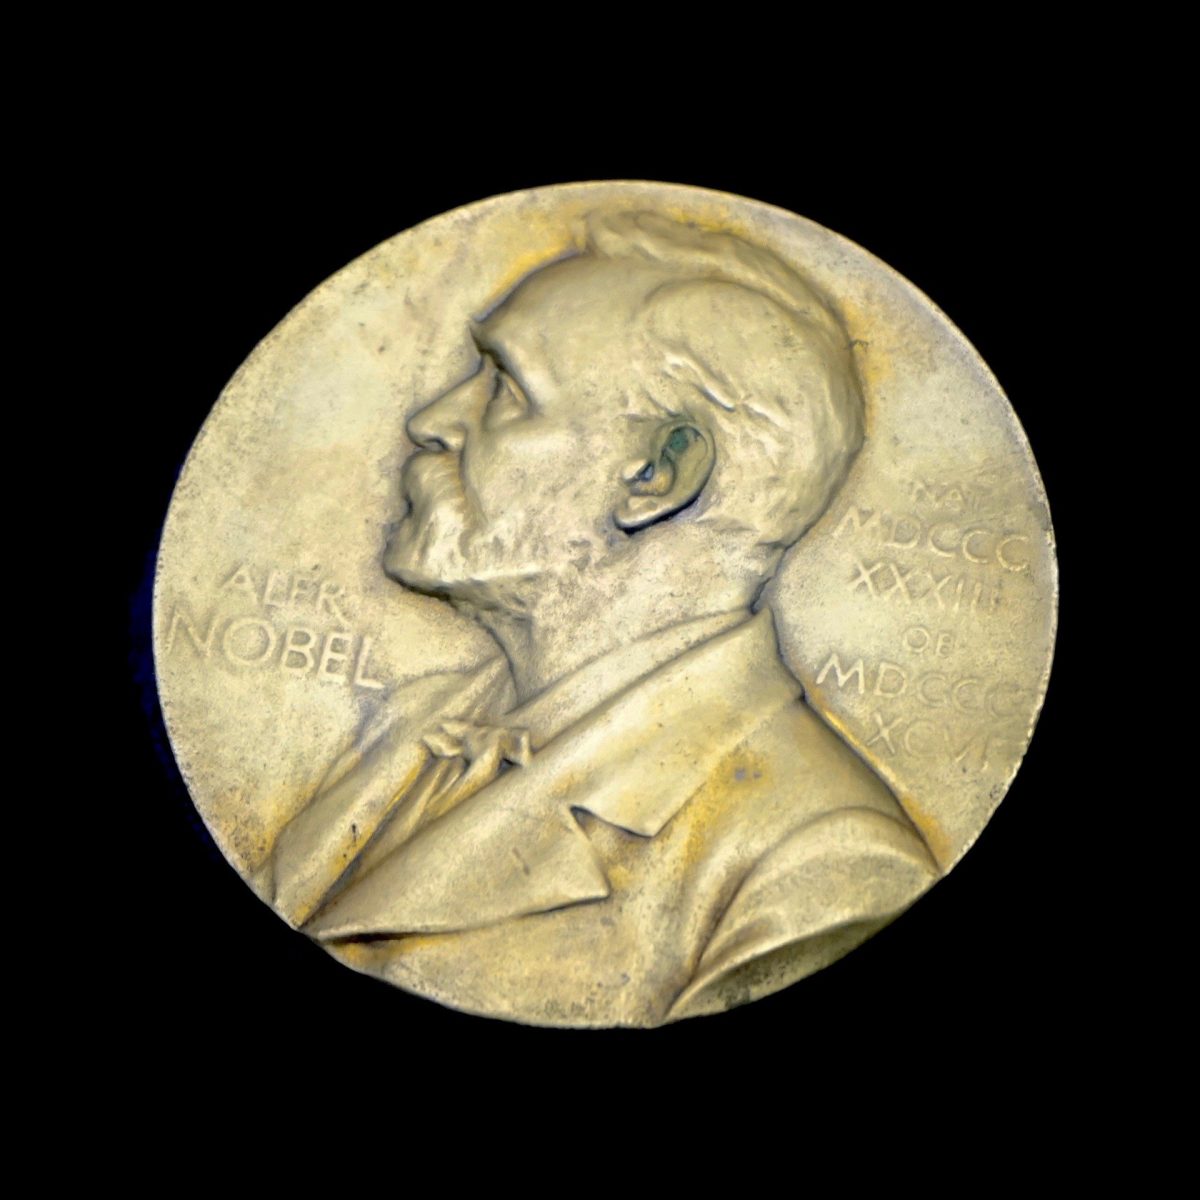 Nobelpreise 2021 und die Messung wissenschaftlicher Qualität